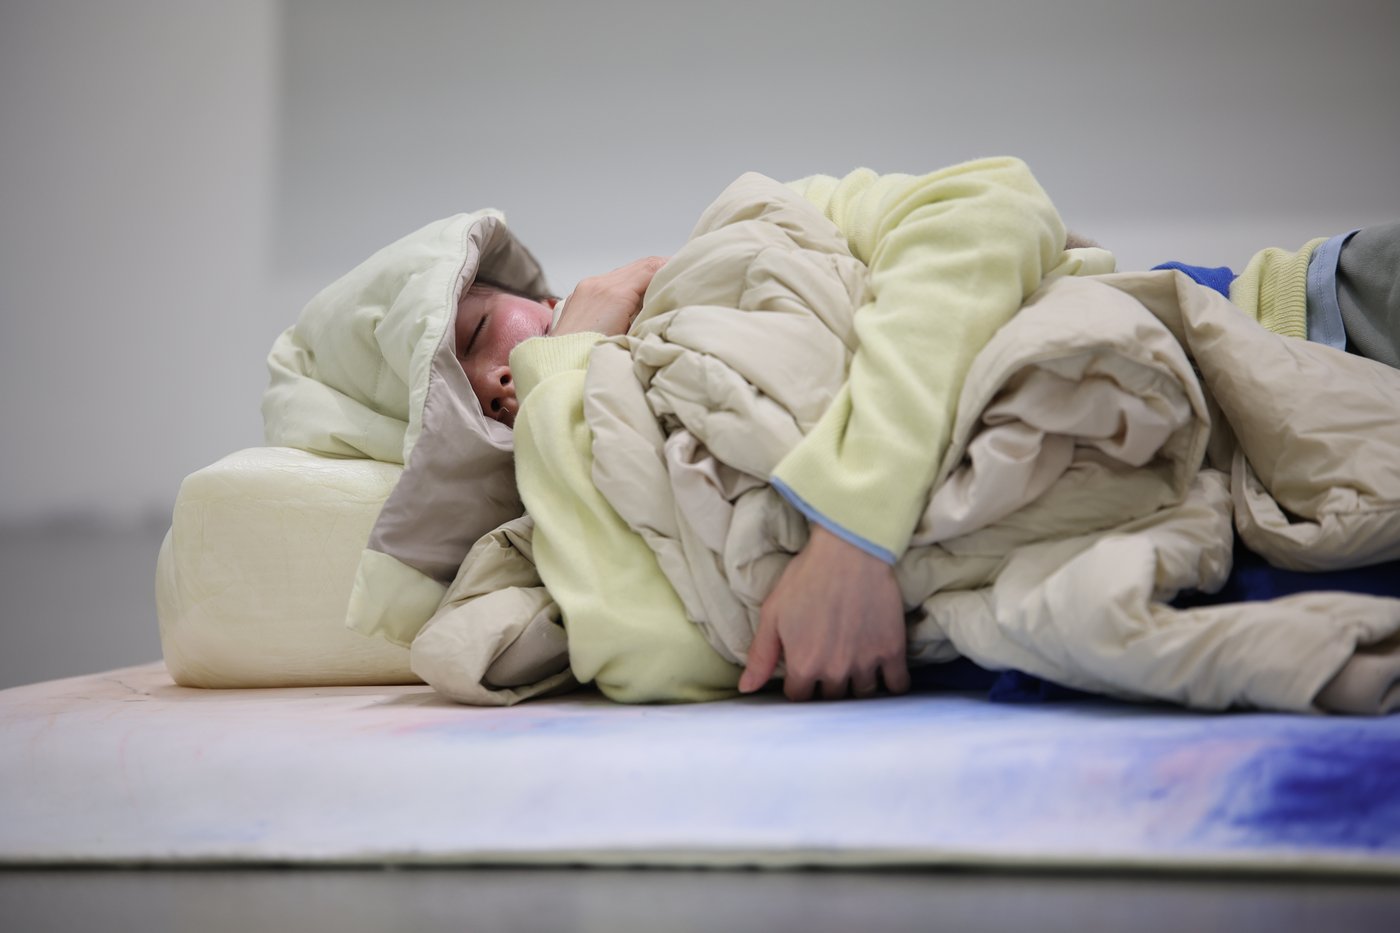 Detailaufnahme einer in Decken gehüllten, schlafenden Person.